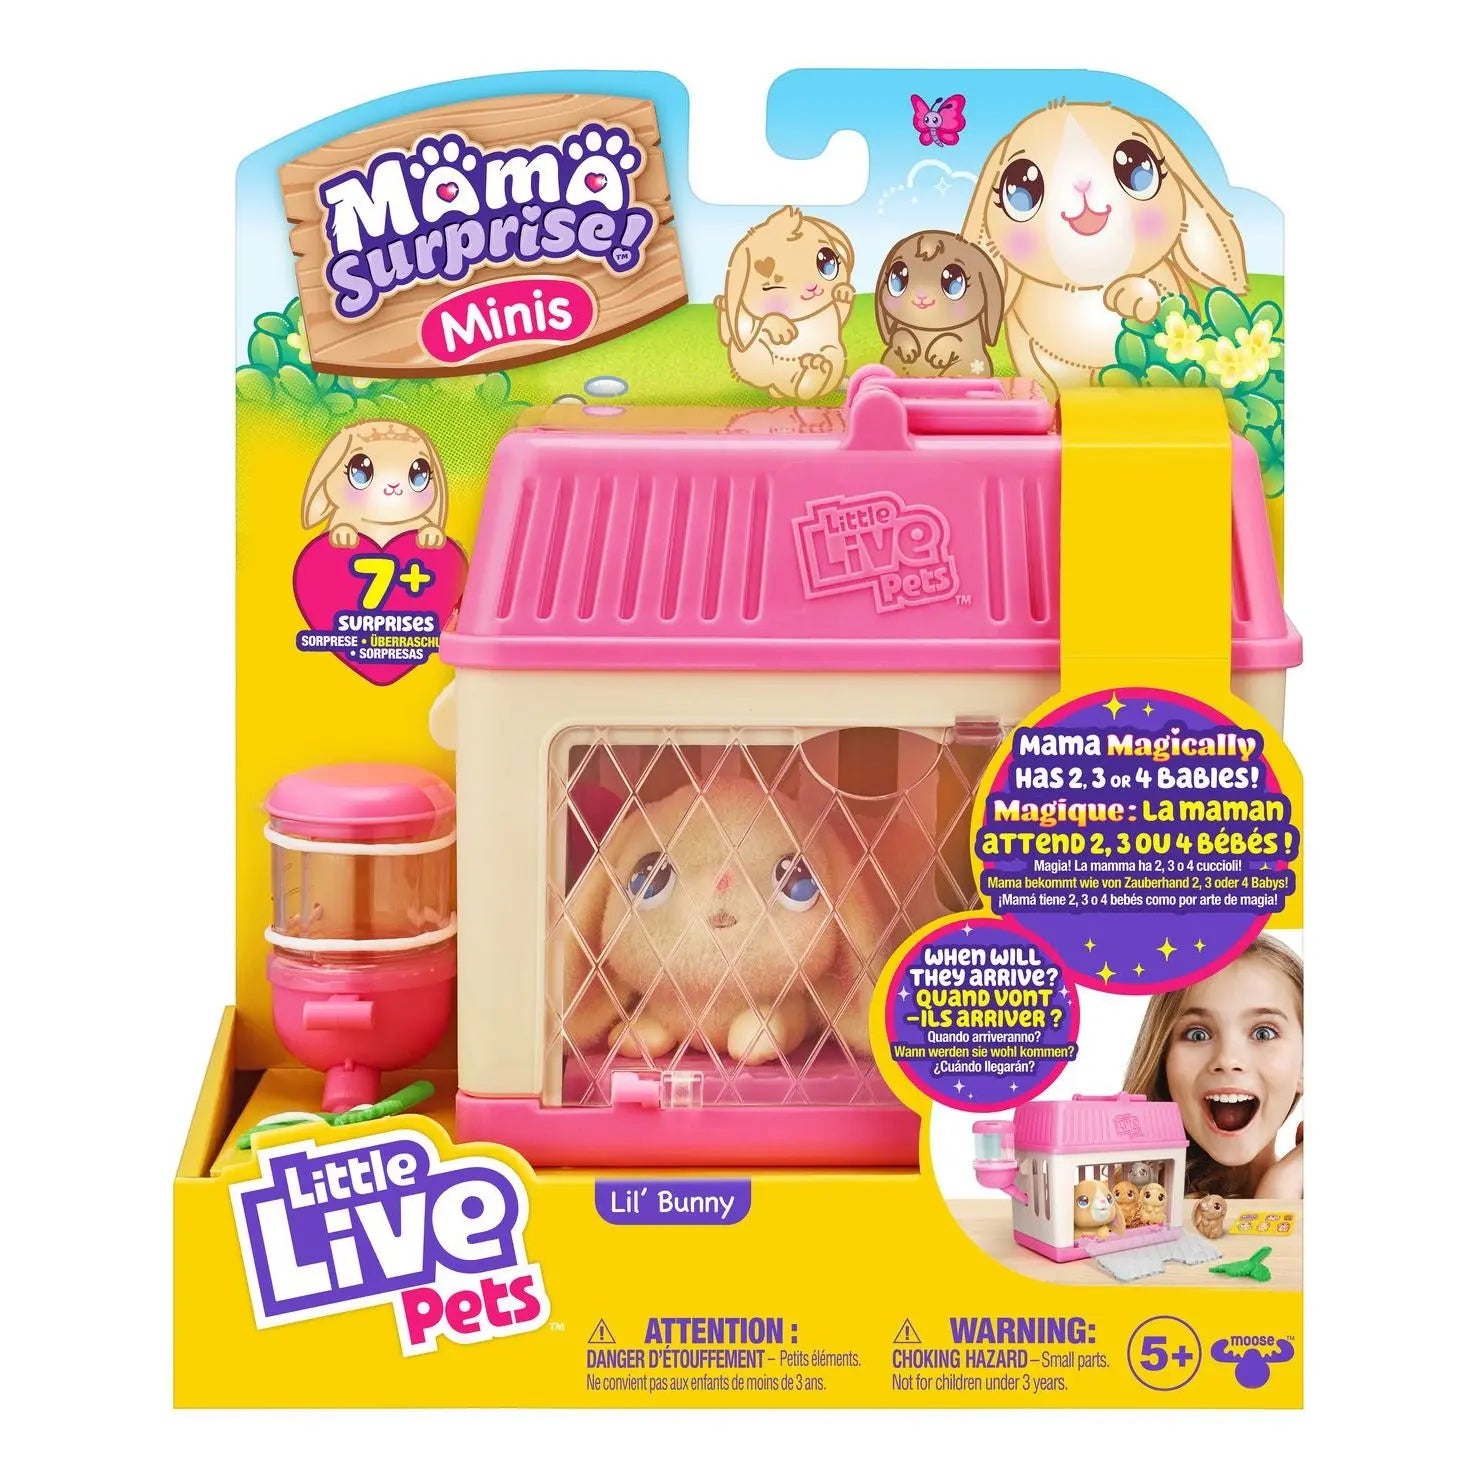 Little Live Pets Mama Surprise Minis Lil Bunny Playset Little Live Pets